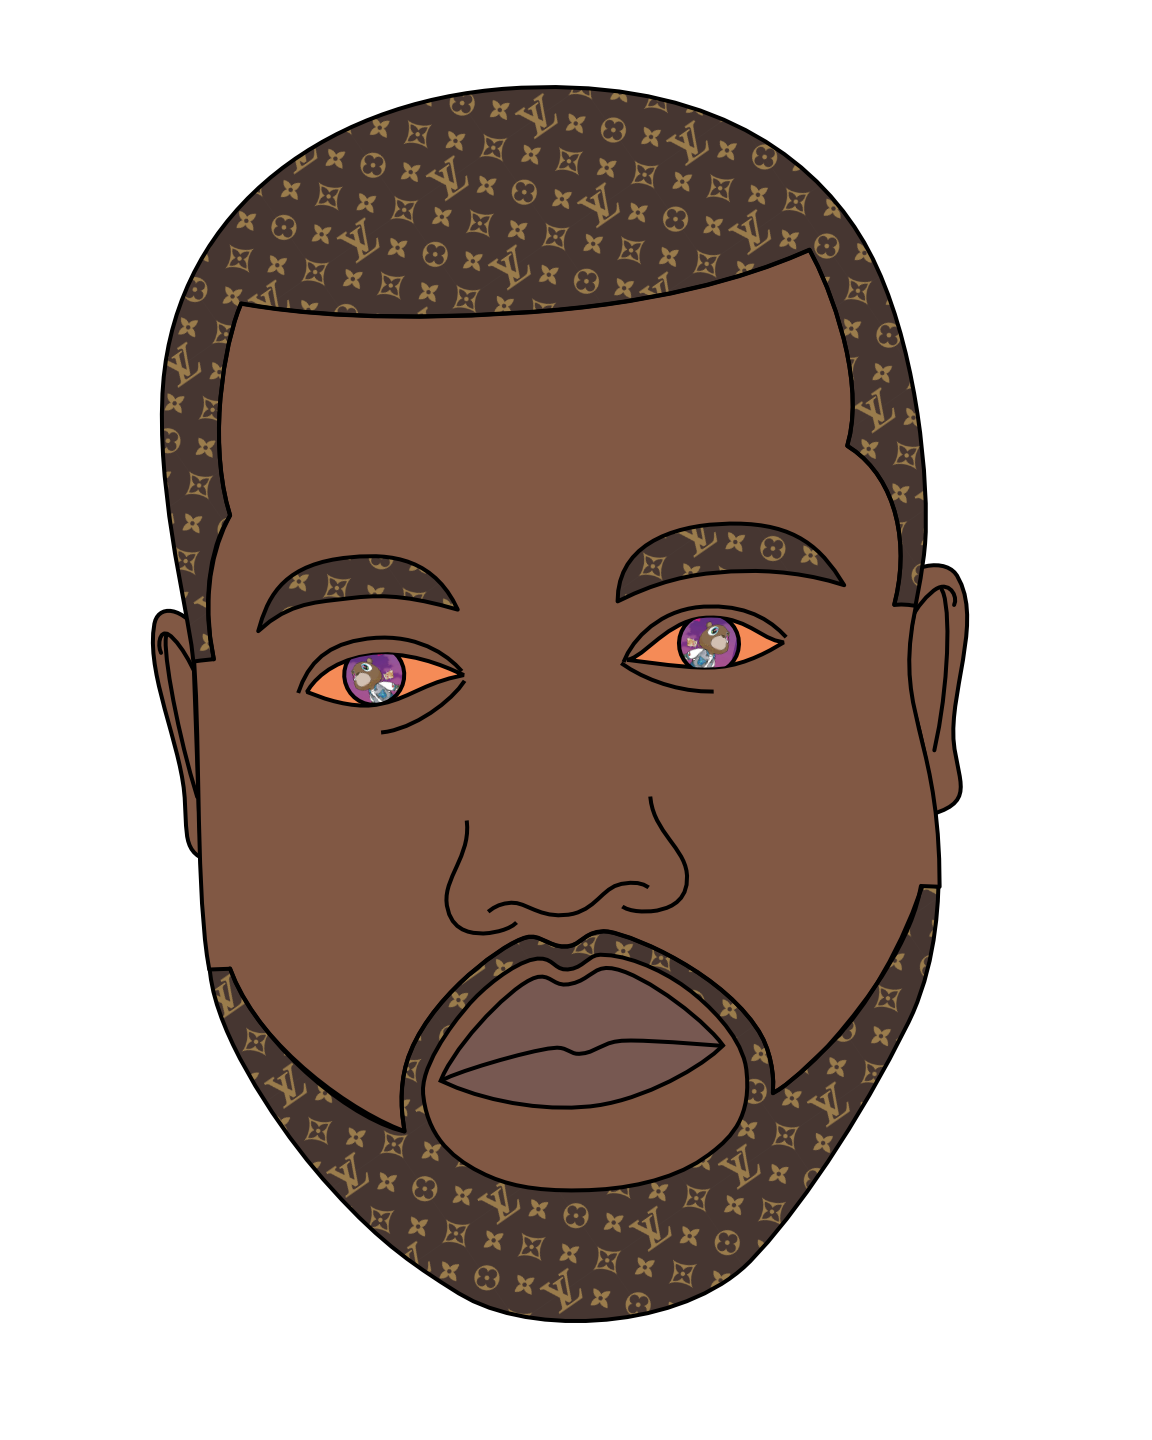 Kanye West portrait (work in progress)